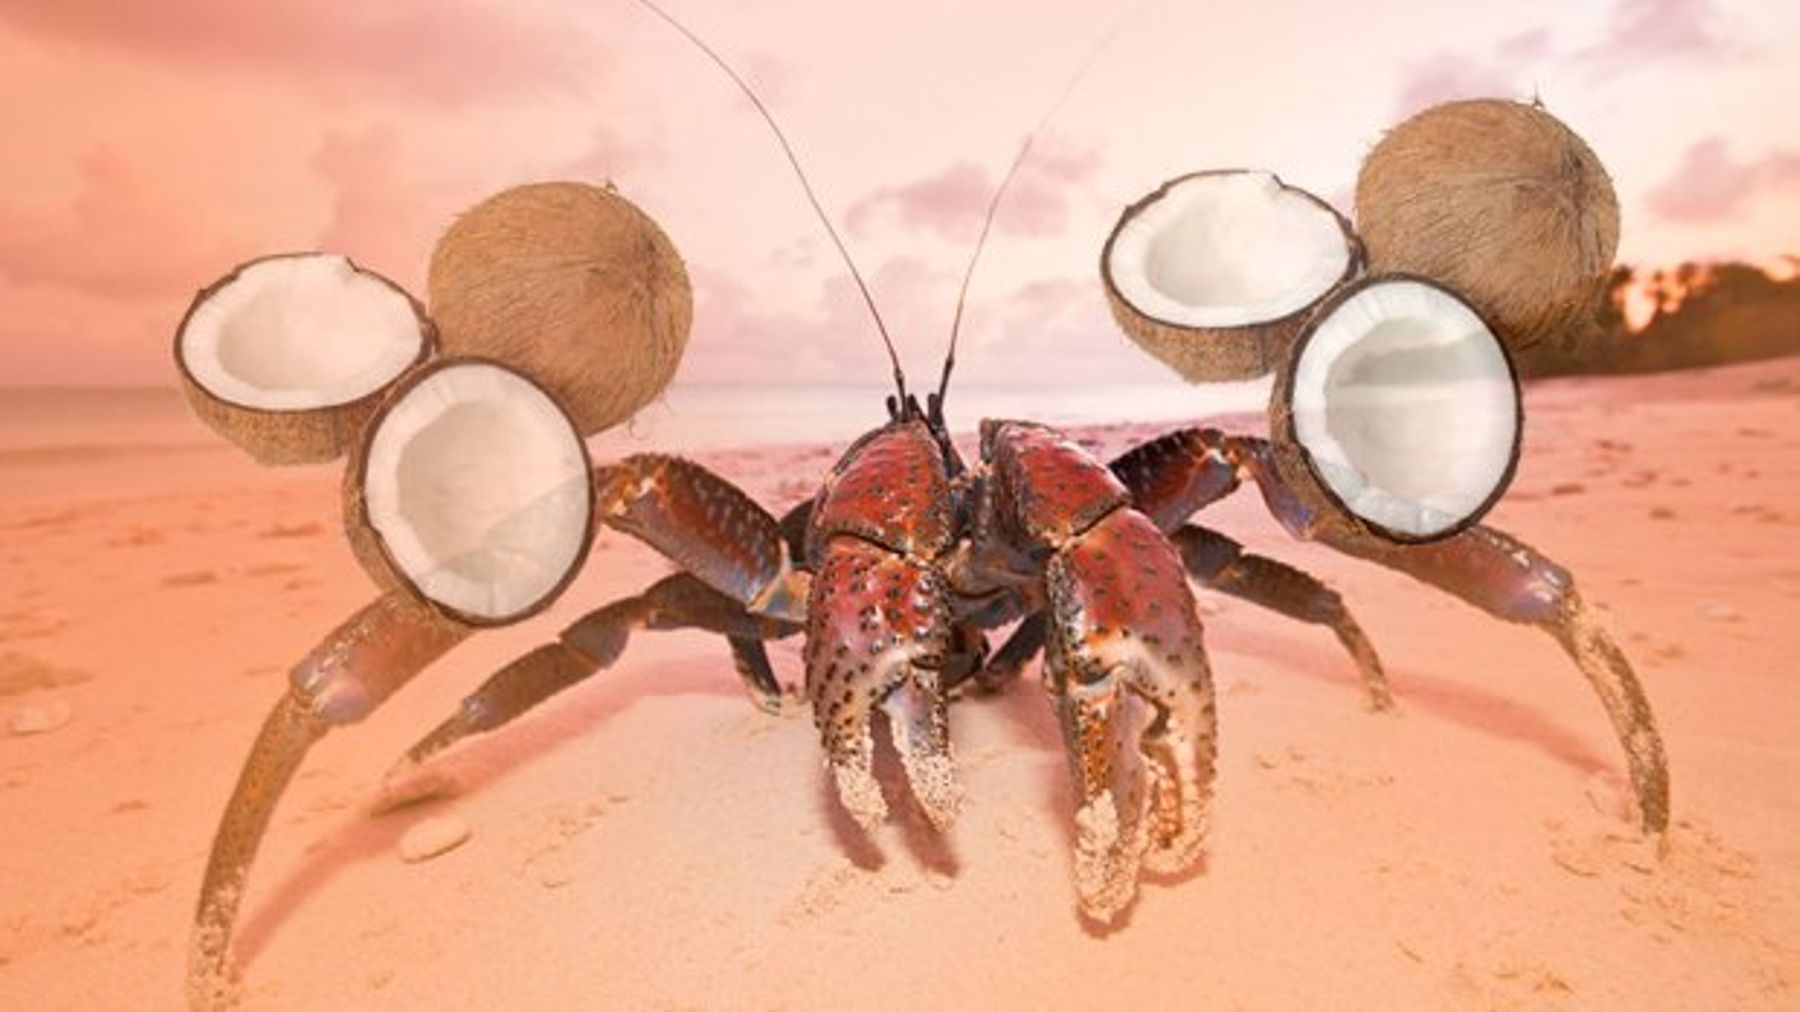 خرچنگ نارگیل / Coconut crabs